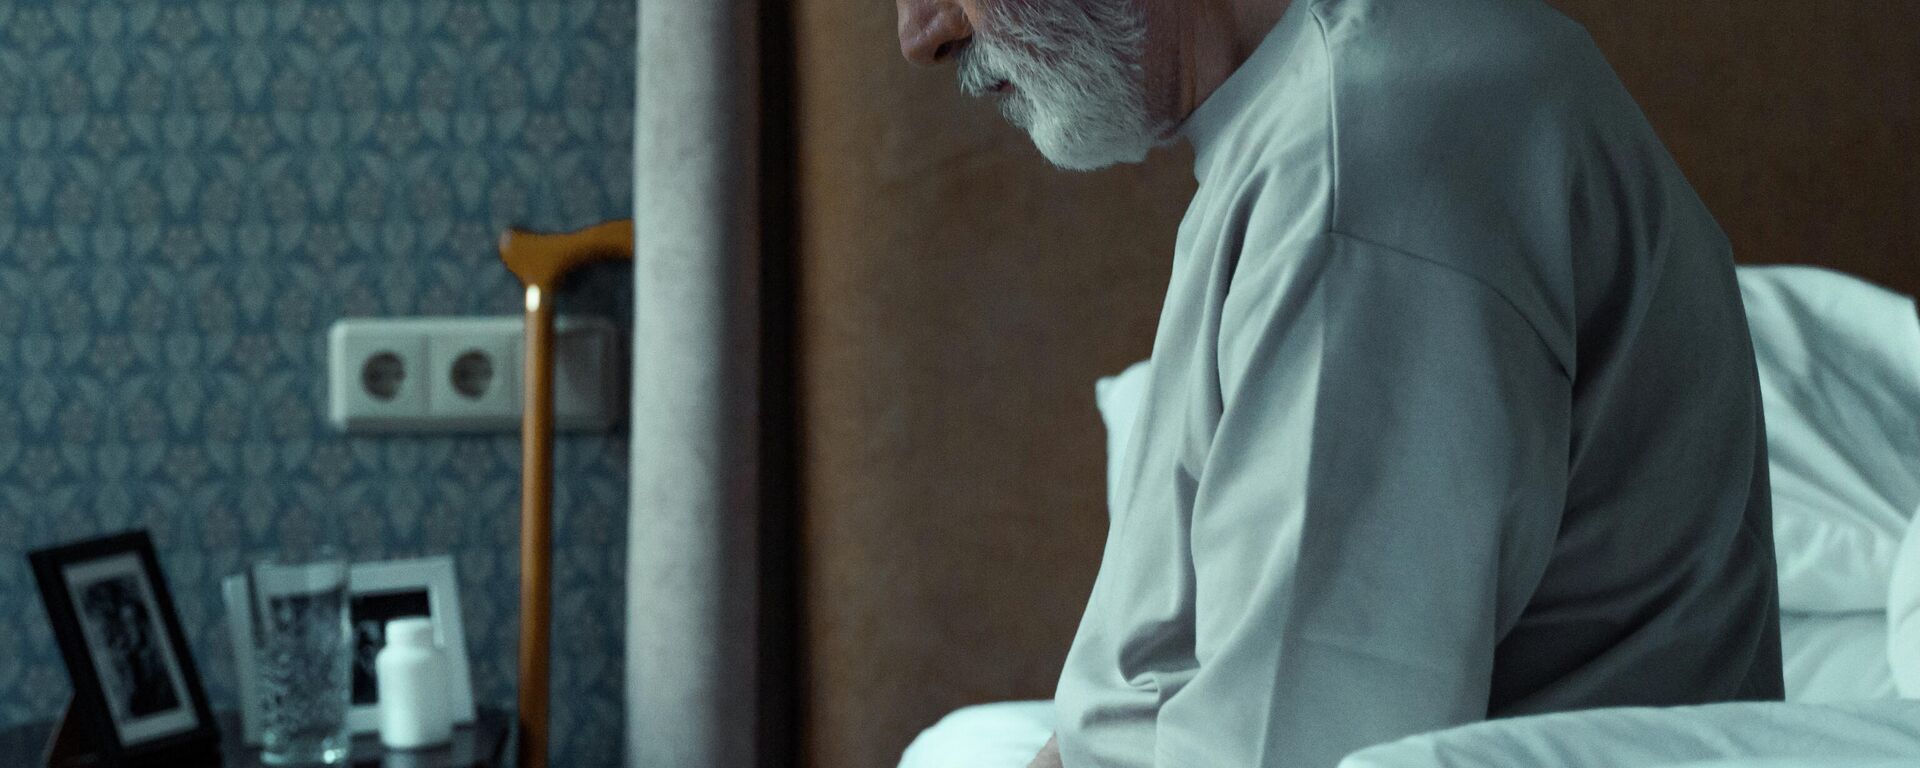 Пожилой мужчина в депрессии. Иллюстративное фото - Sputnik Кыргызстан, 1920, 24.03.2022